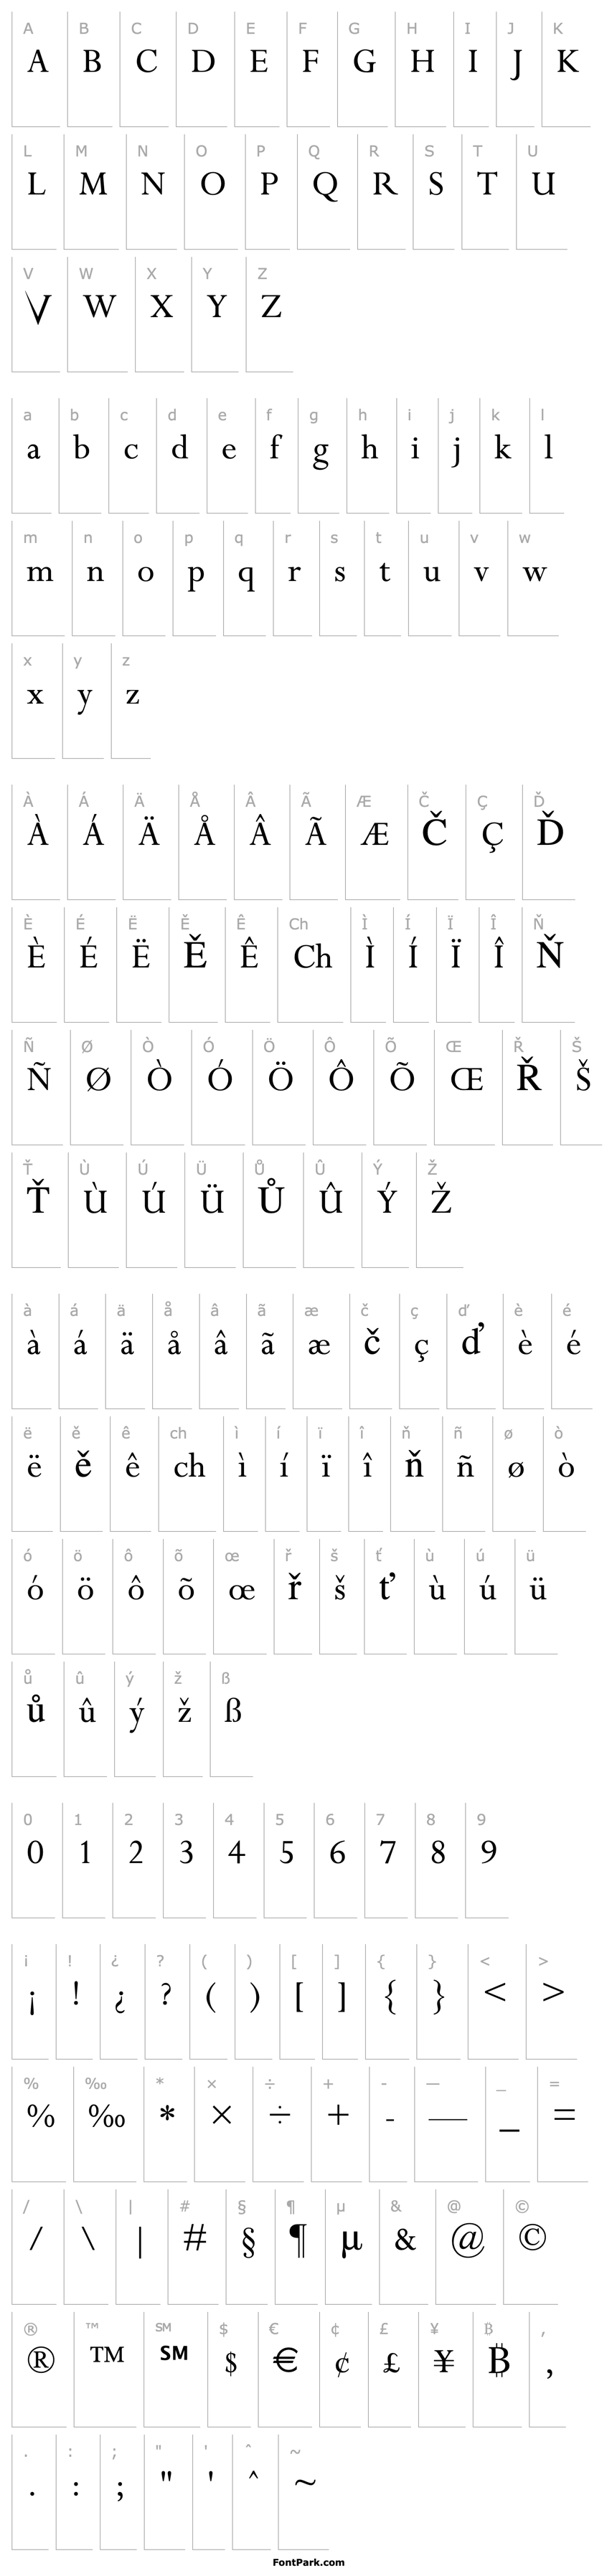 Přehled Riven: The Font (v3.0)